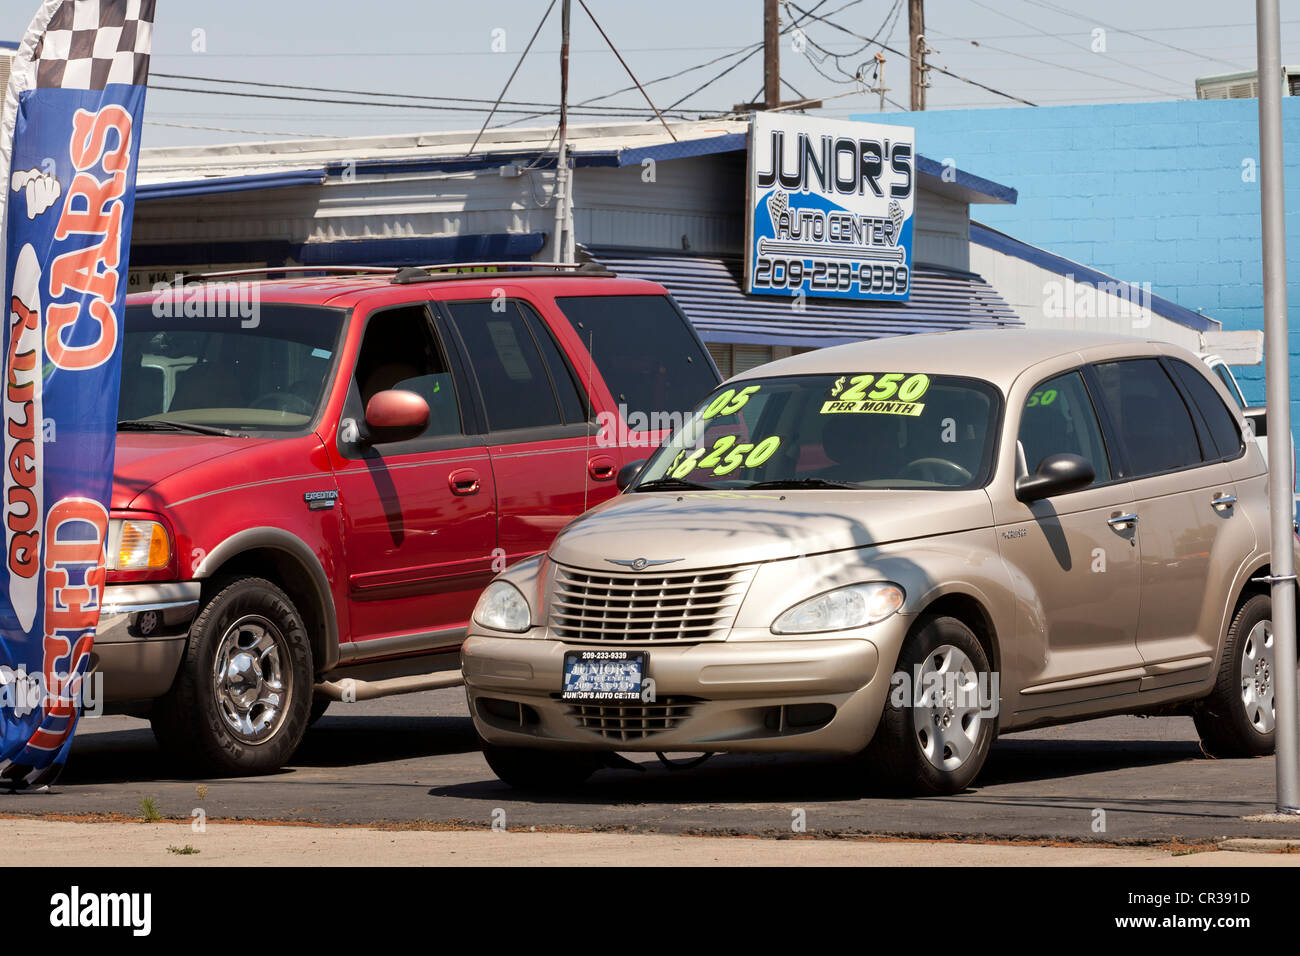 Used car lot - California USA Stock Photo